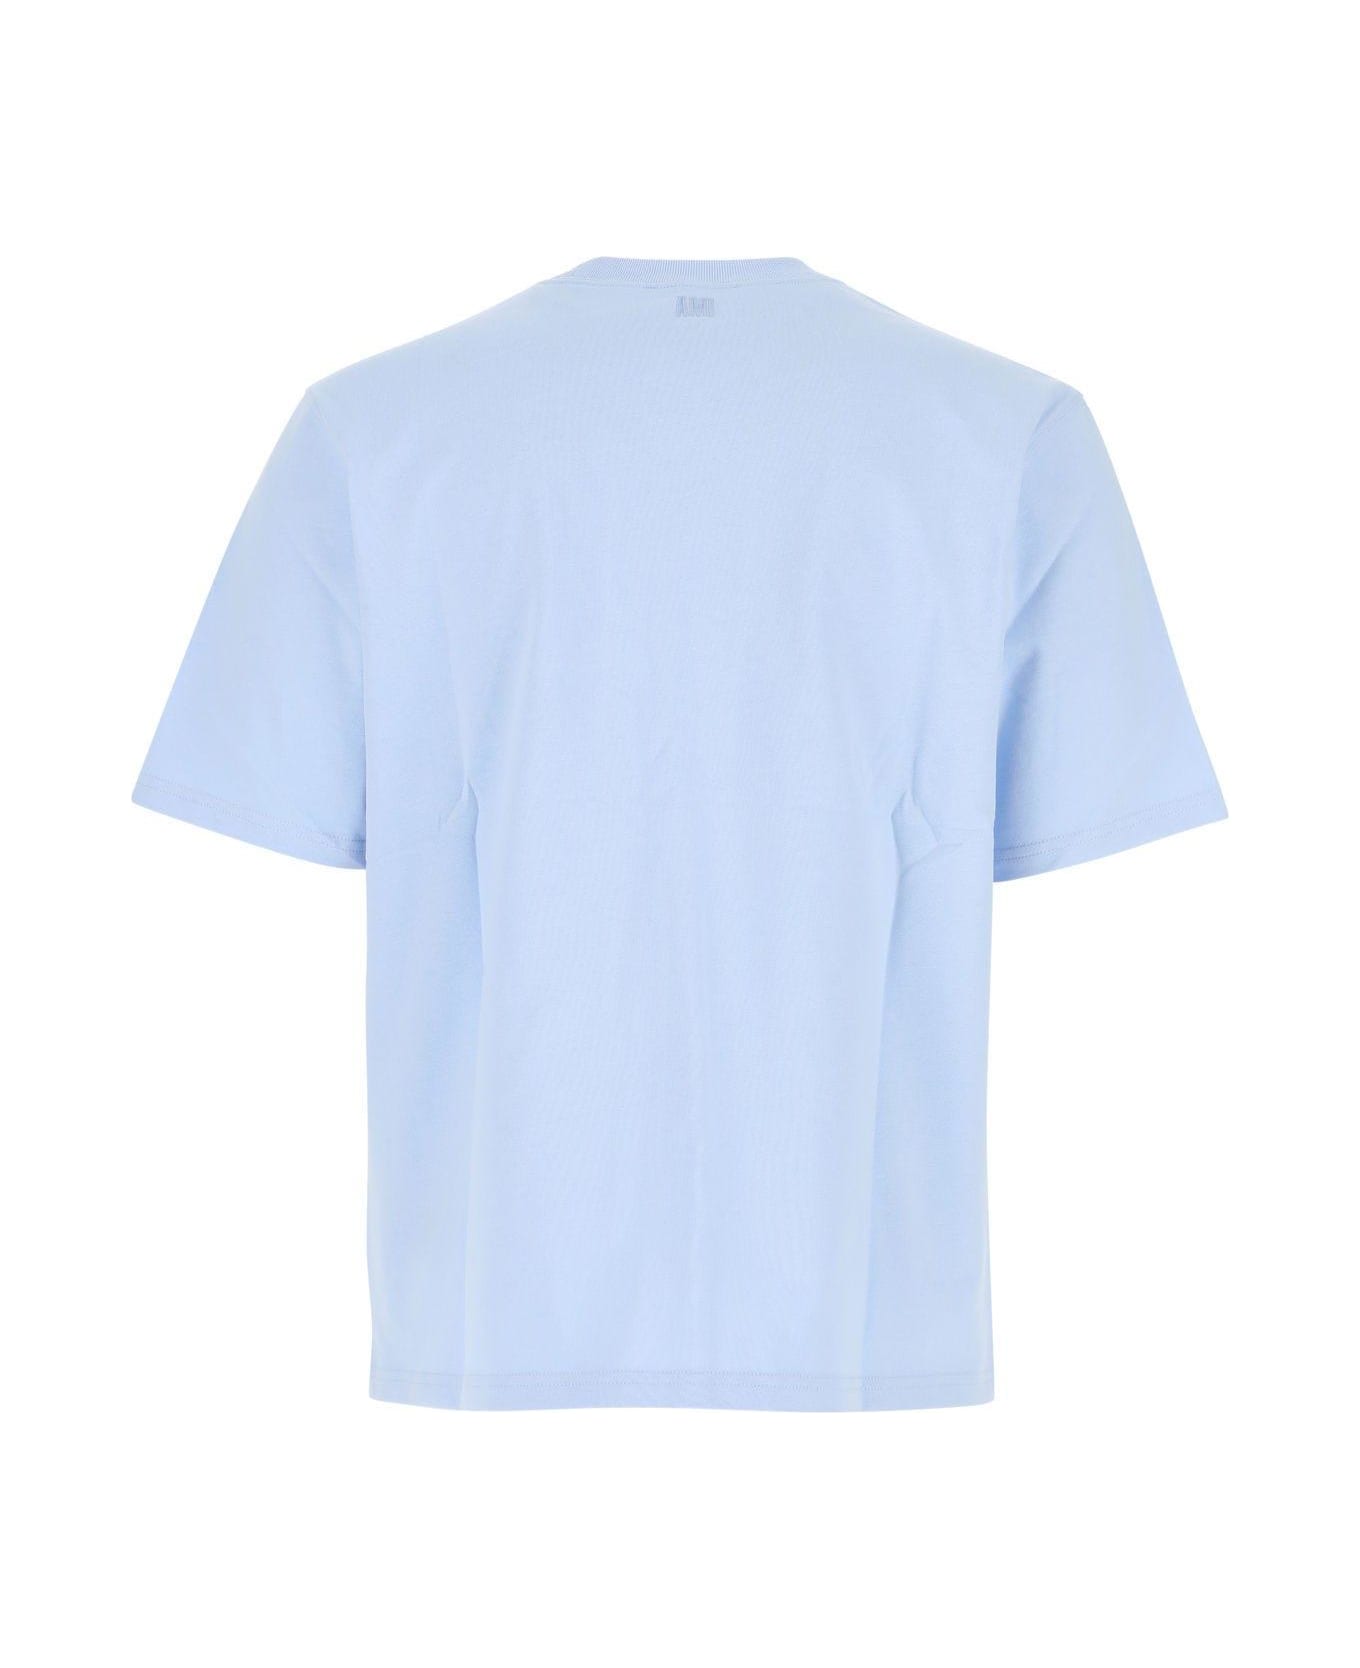 Ami Alexandre Mattiussi Light Blue Cotton Oversize T-shirt - Sky Blue